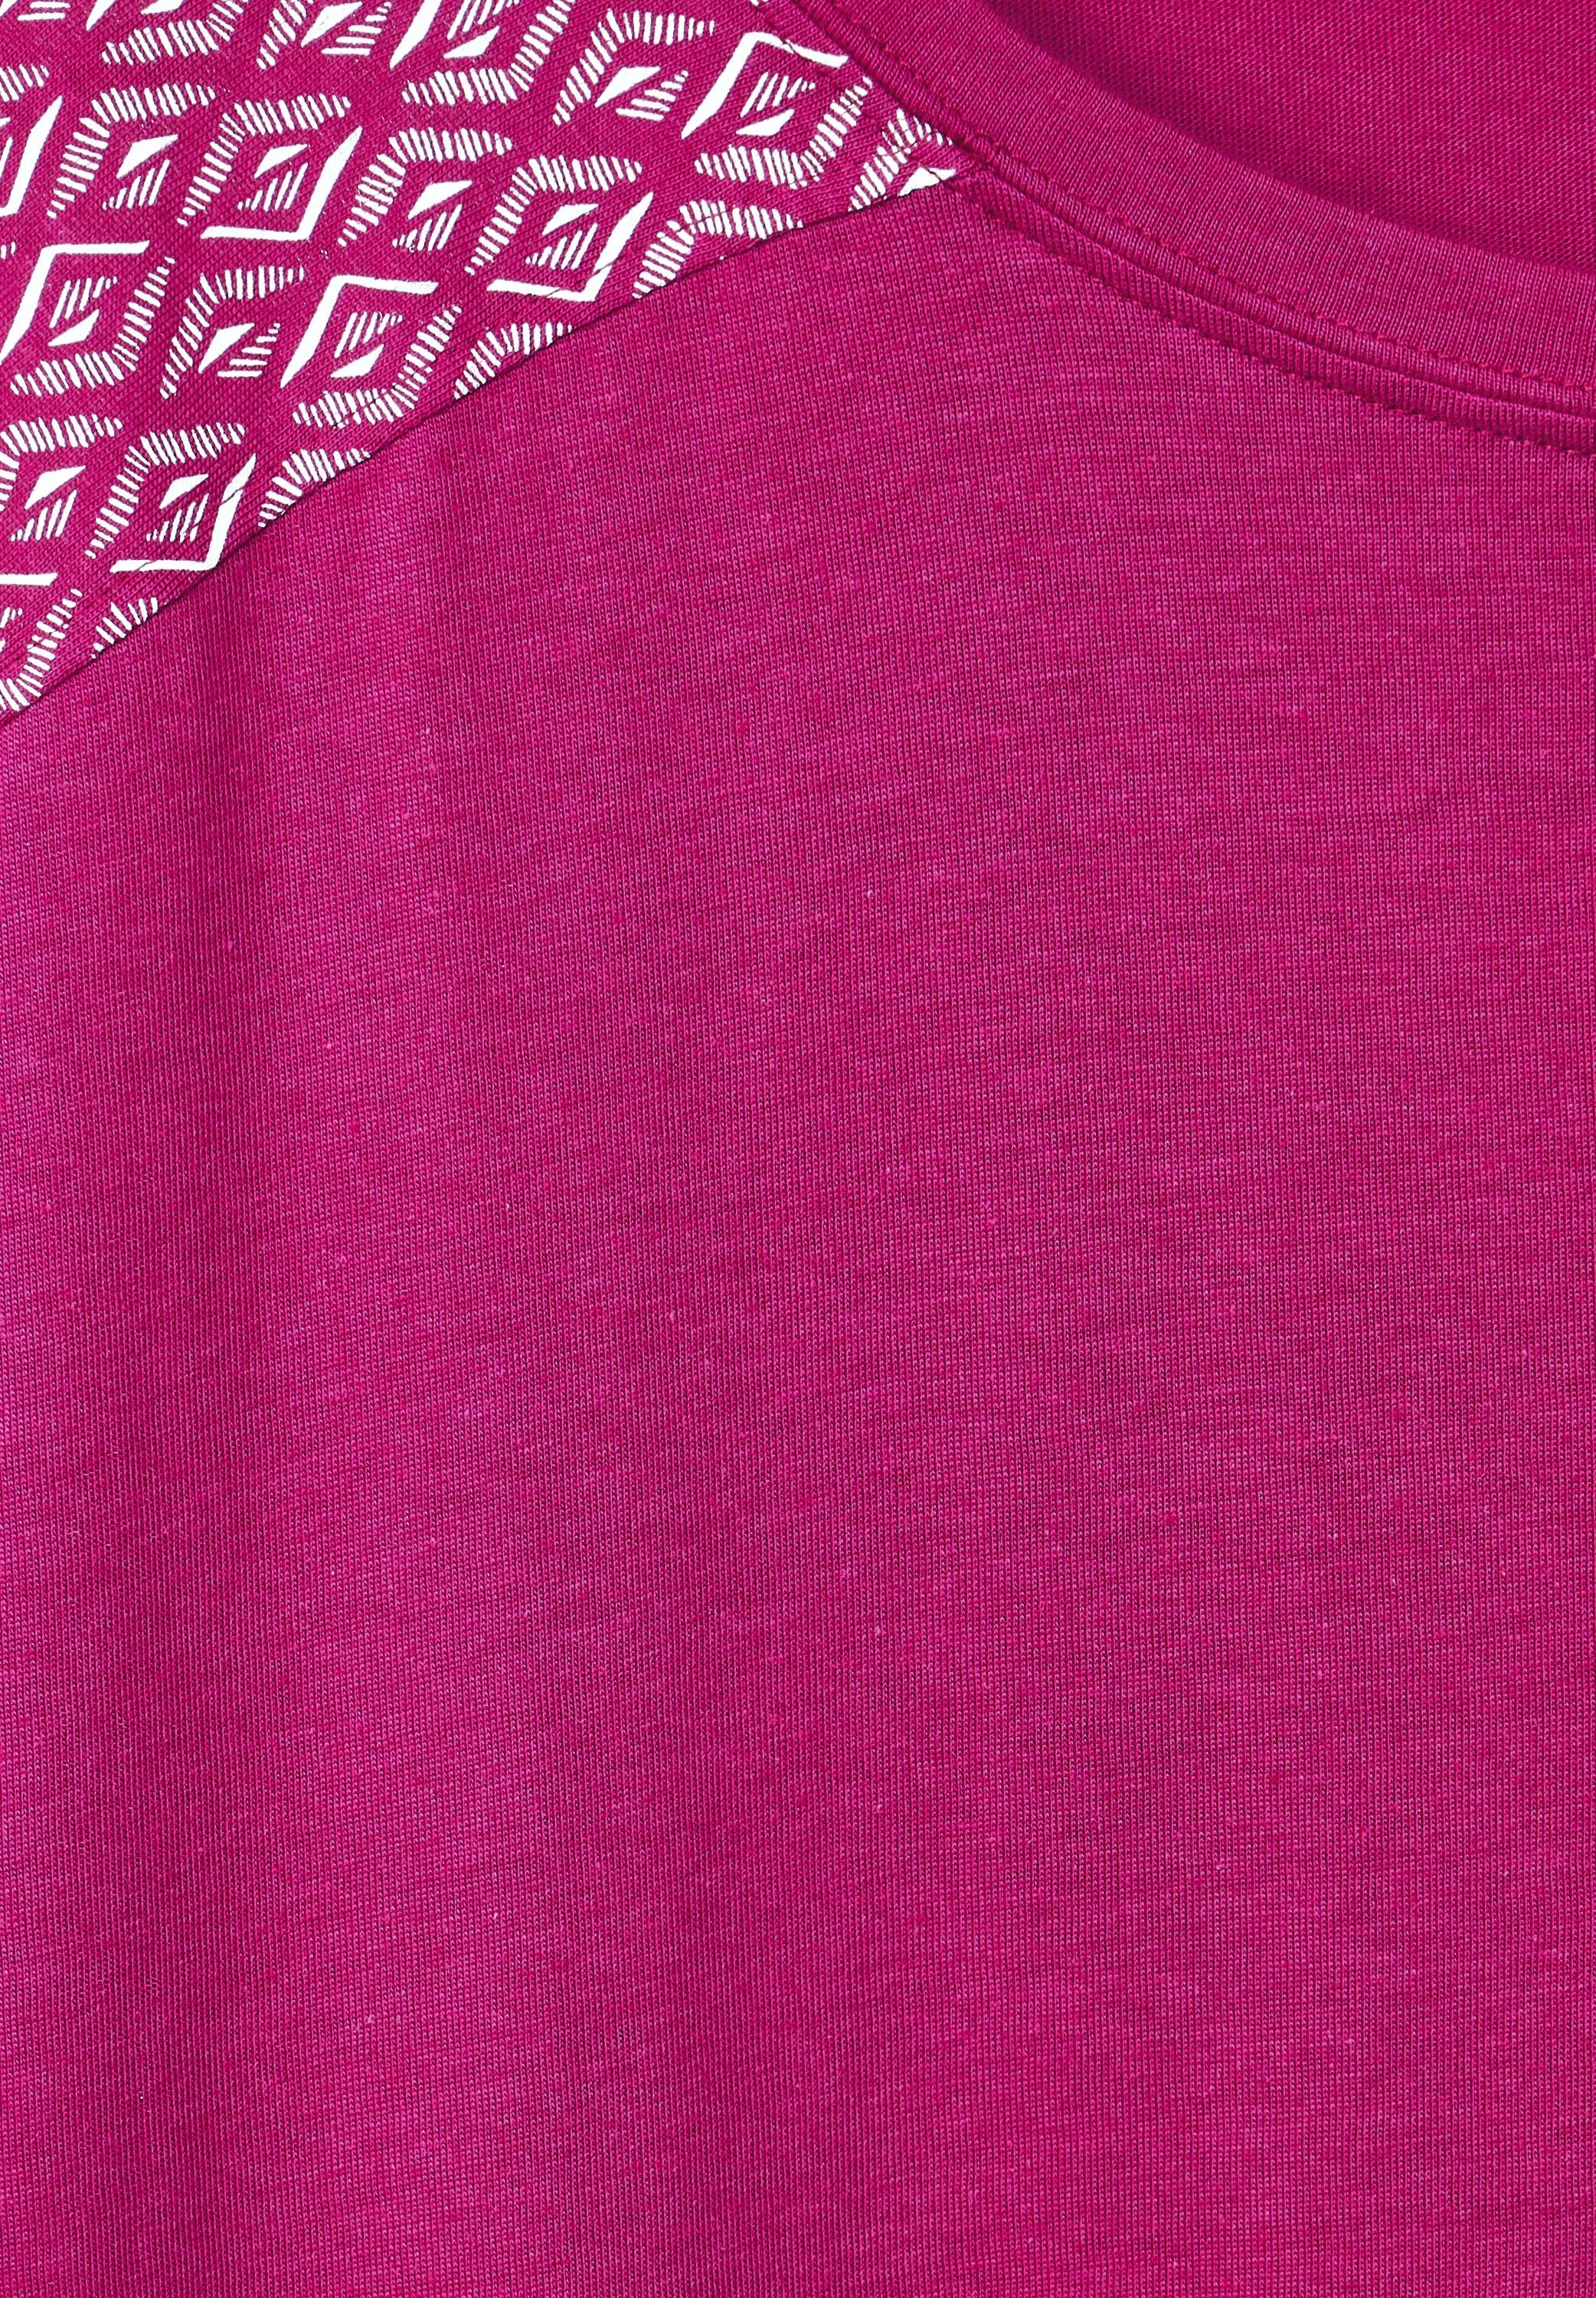 Cecil cool softem T-Shirt aus Materialmix pink